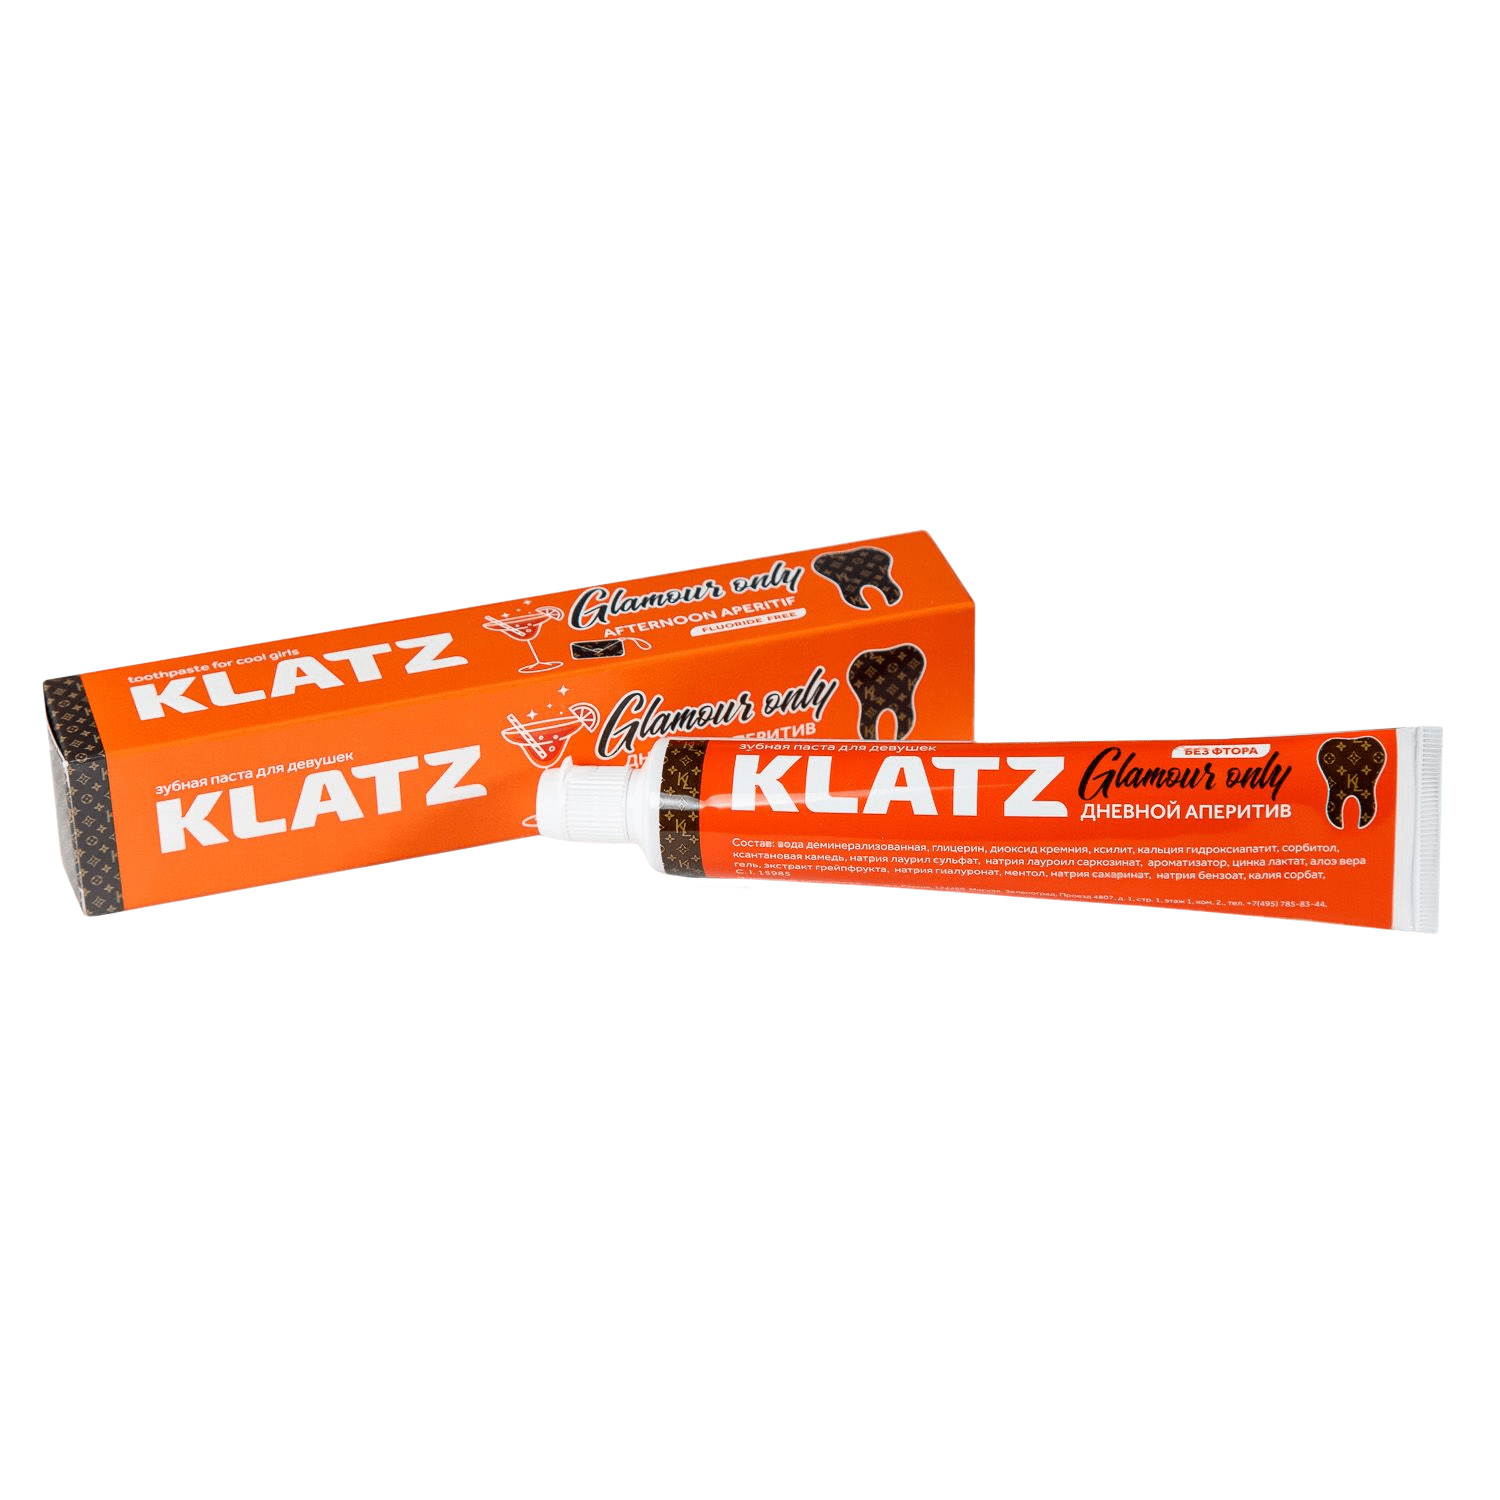 Klatz Зубная паста для девушек Дневной аперитив, 75 мл (Klatz, Glamour Only)